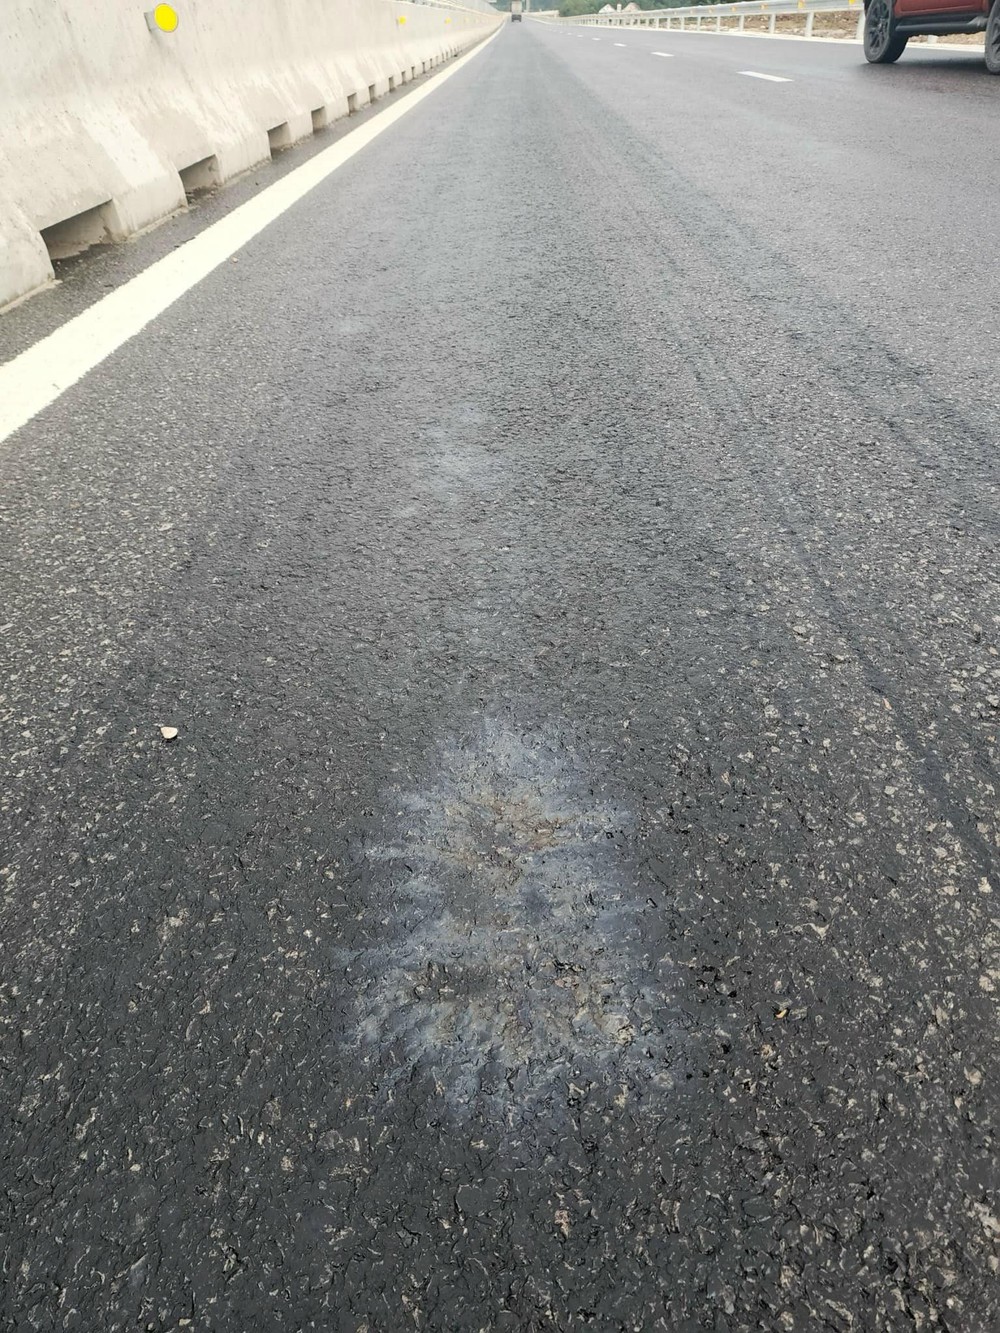 Tập đoàn Sơn Hải trình báo khẩn cấp vì bị đổ hóa chất phá hoại mặt bằng đường cao tốc - Ảnh 2.